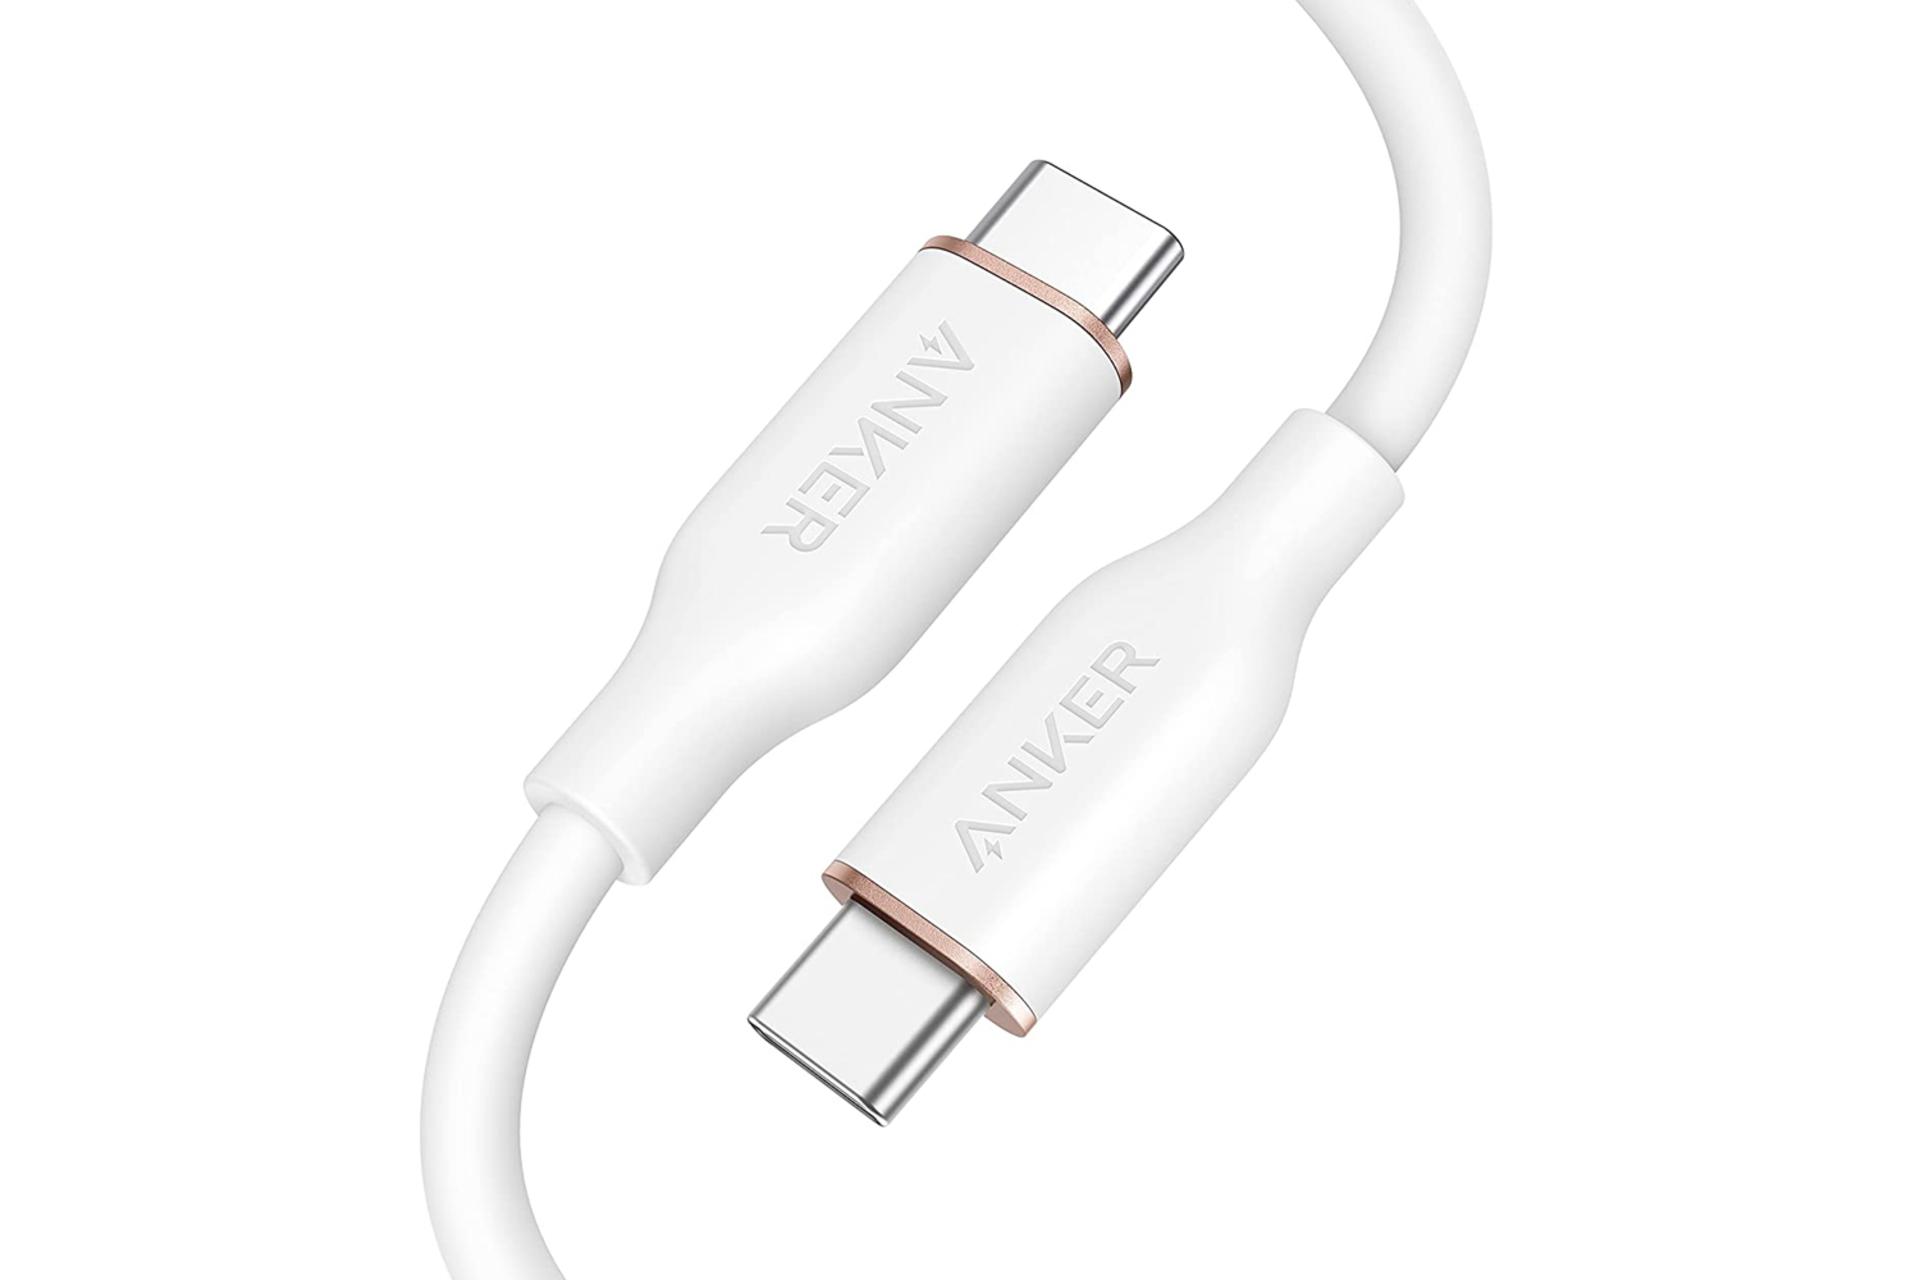 کابل شارژ USB انکر Type-C به Type-C مدل A8552 PowerLine III Flow با طول 0.9 متر سفید